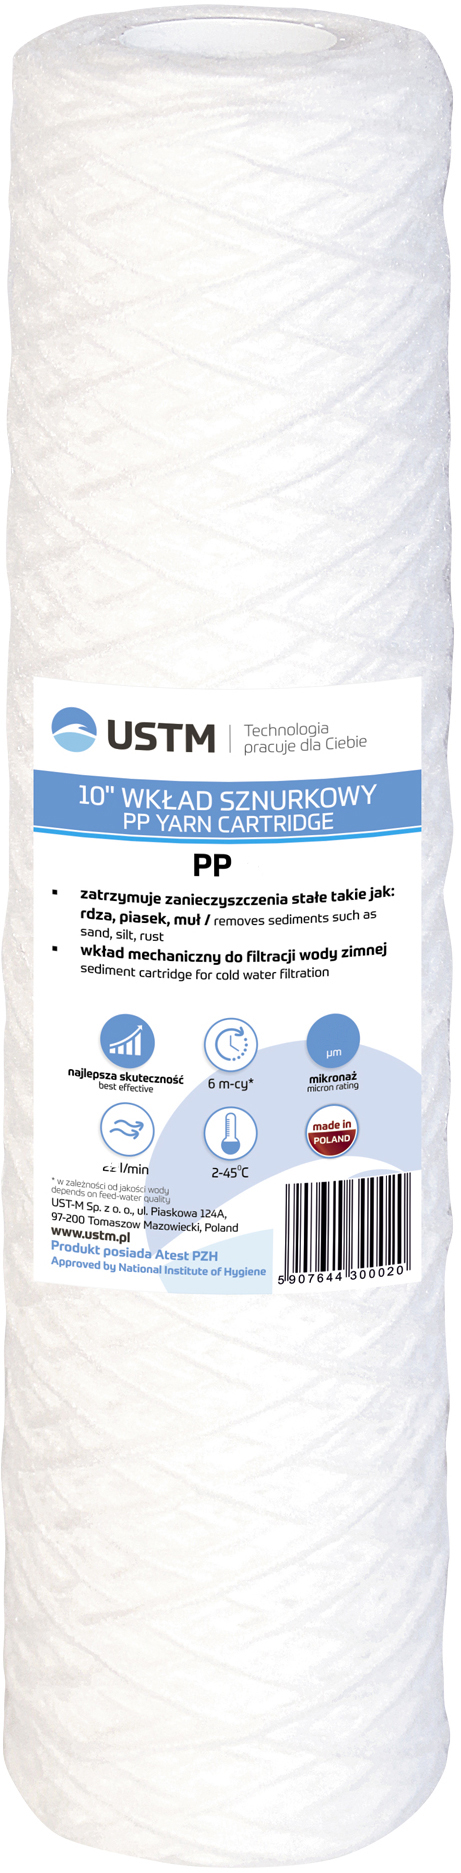 Картридж для фильтра USTM PP50 в интернет-магазине, главное фото